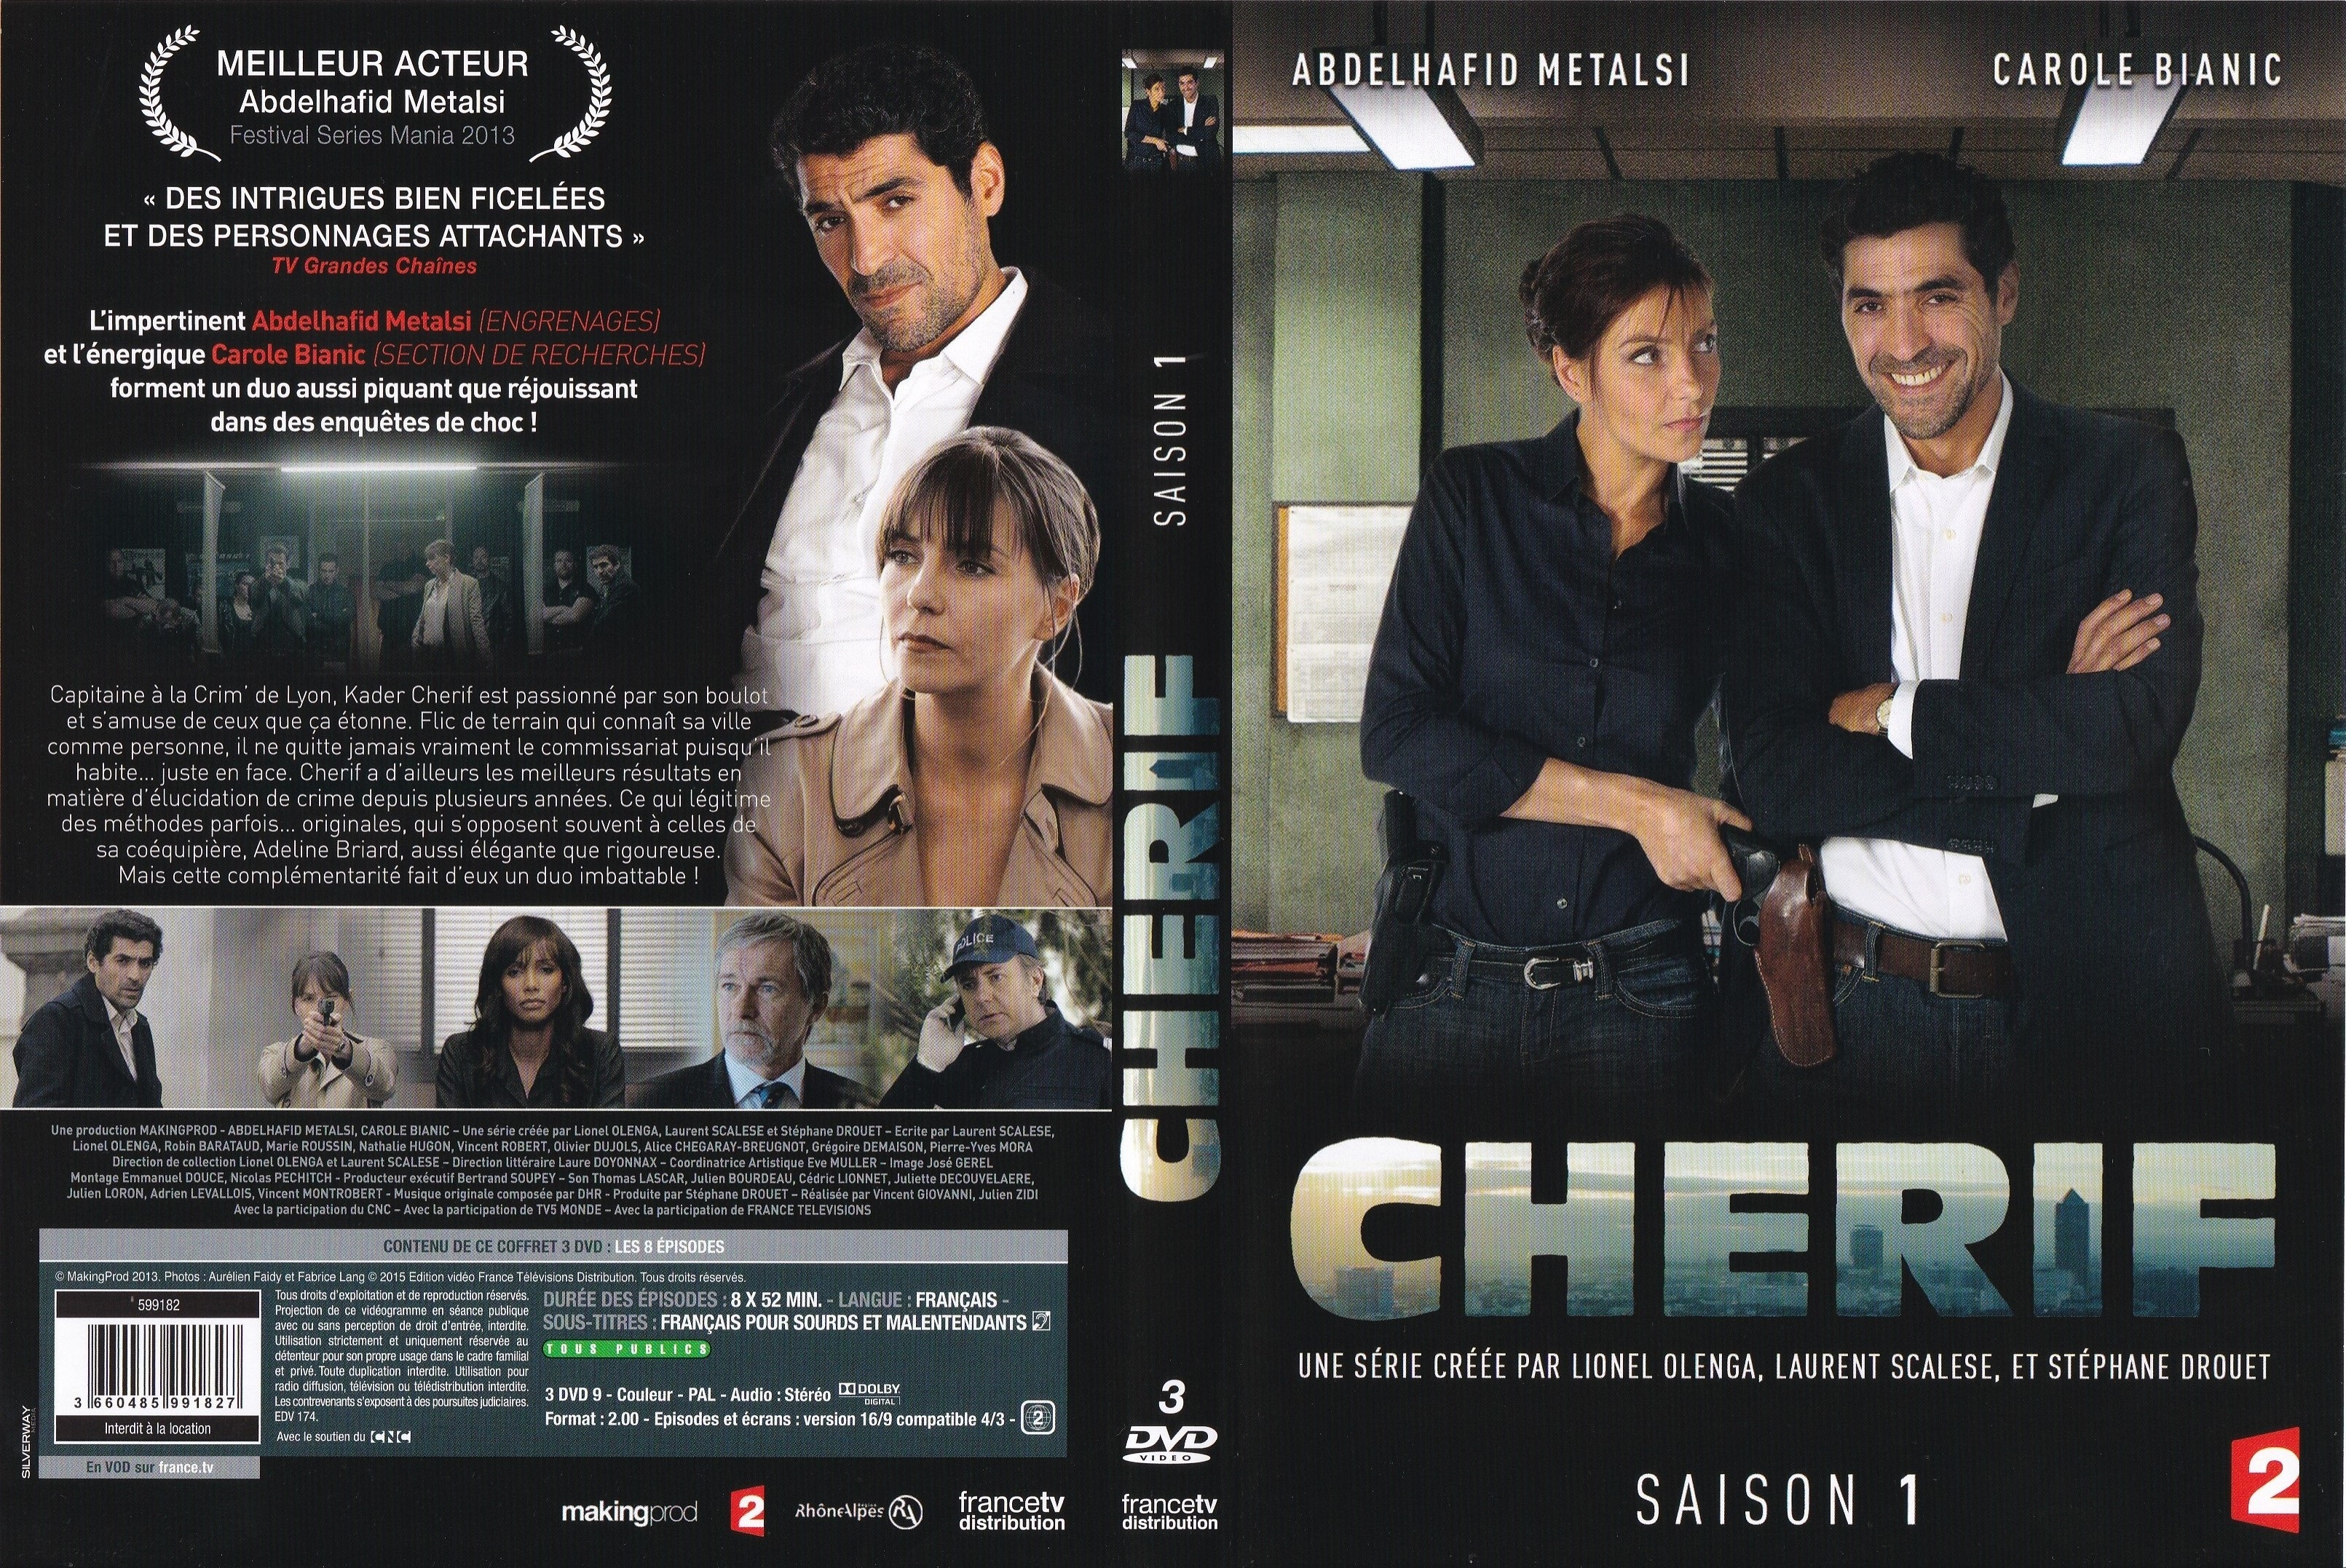 Jaquette DVD Cherif Saison 1